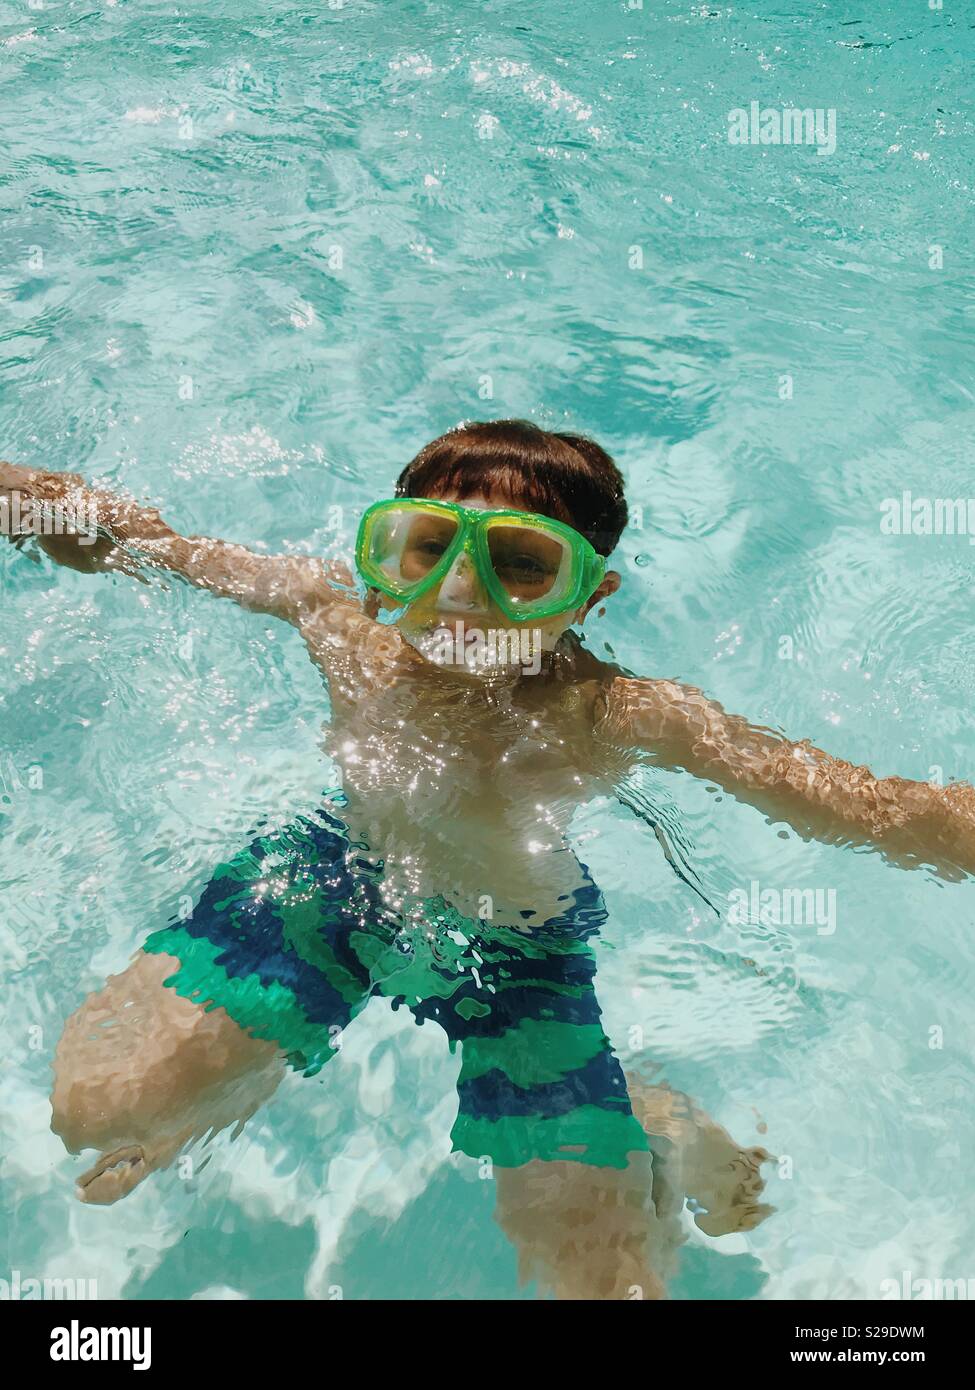 Un jeune garçon dans un masque de plongée sous l'eau dans une piscine extérieure. Banque D'Images